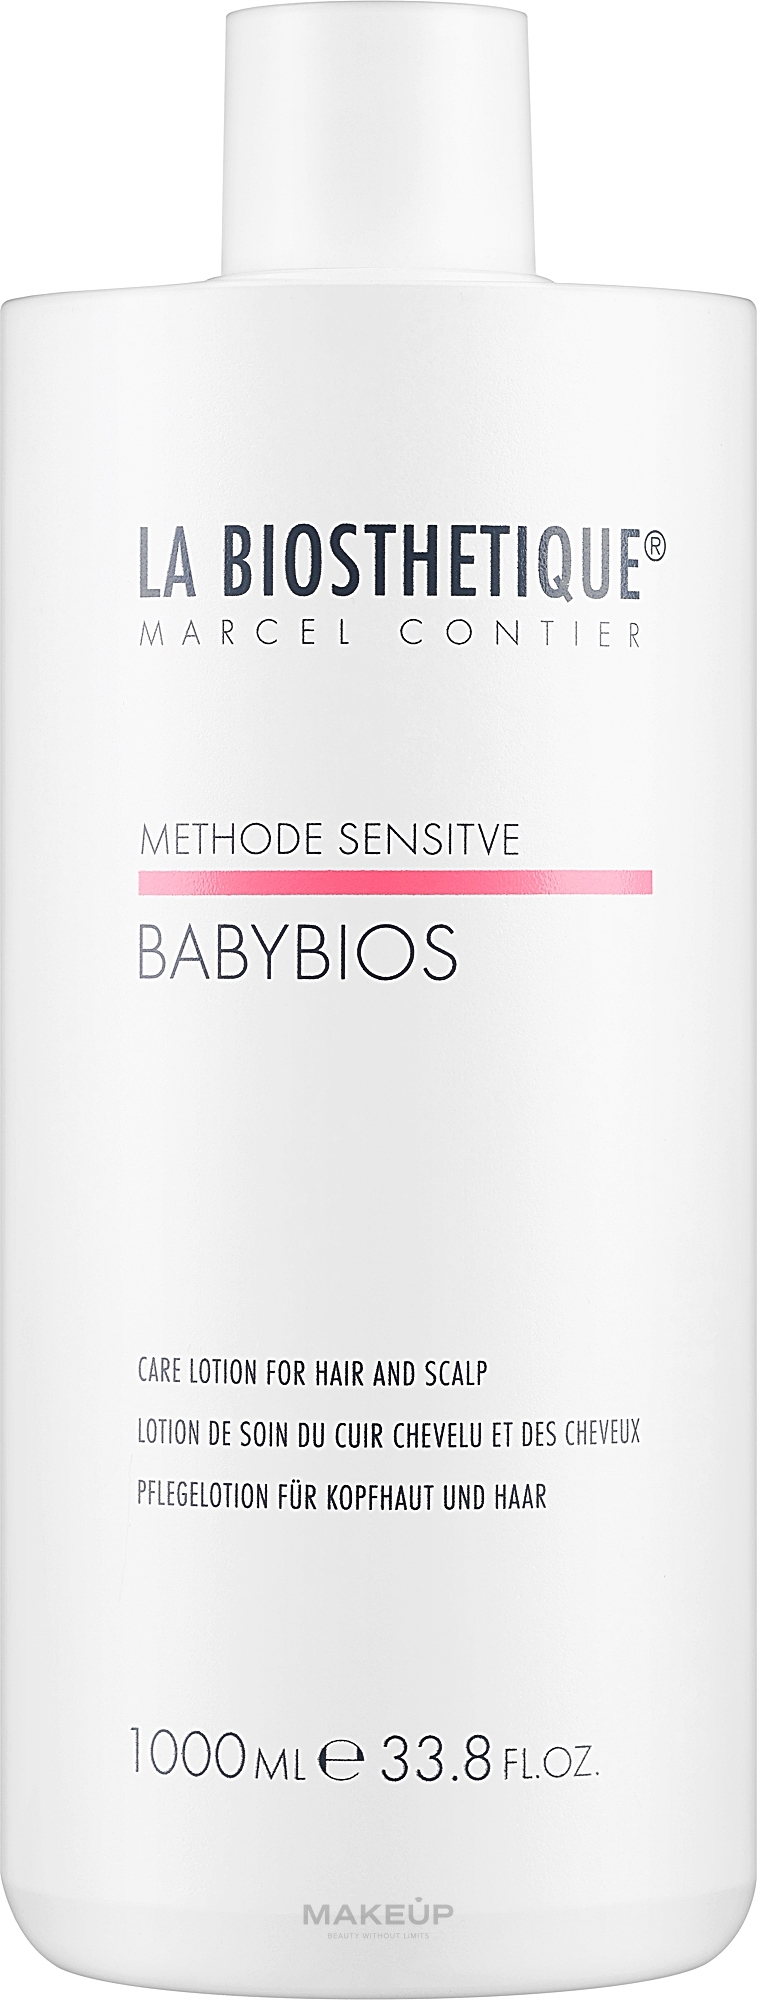 Кондиционер-лосьон для волос и кожи головы - La Biosthetique Methode Sensitive Babybios — фото 1000ml